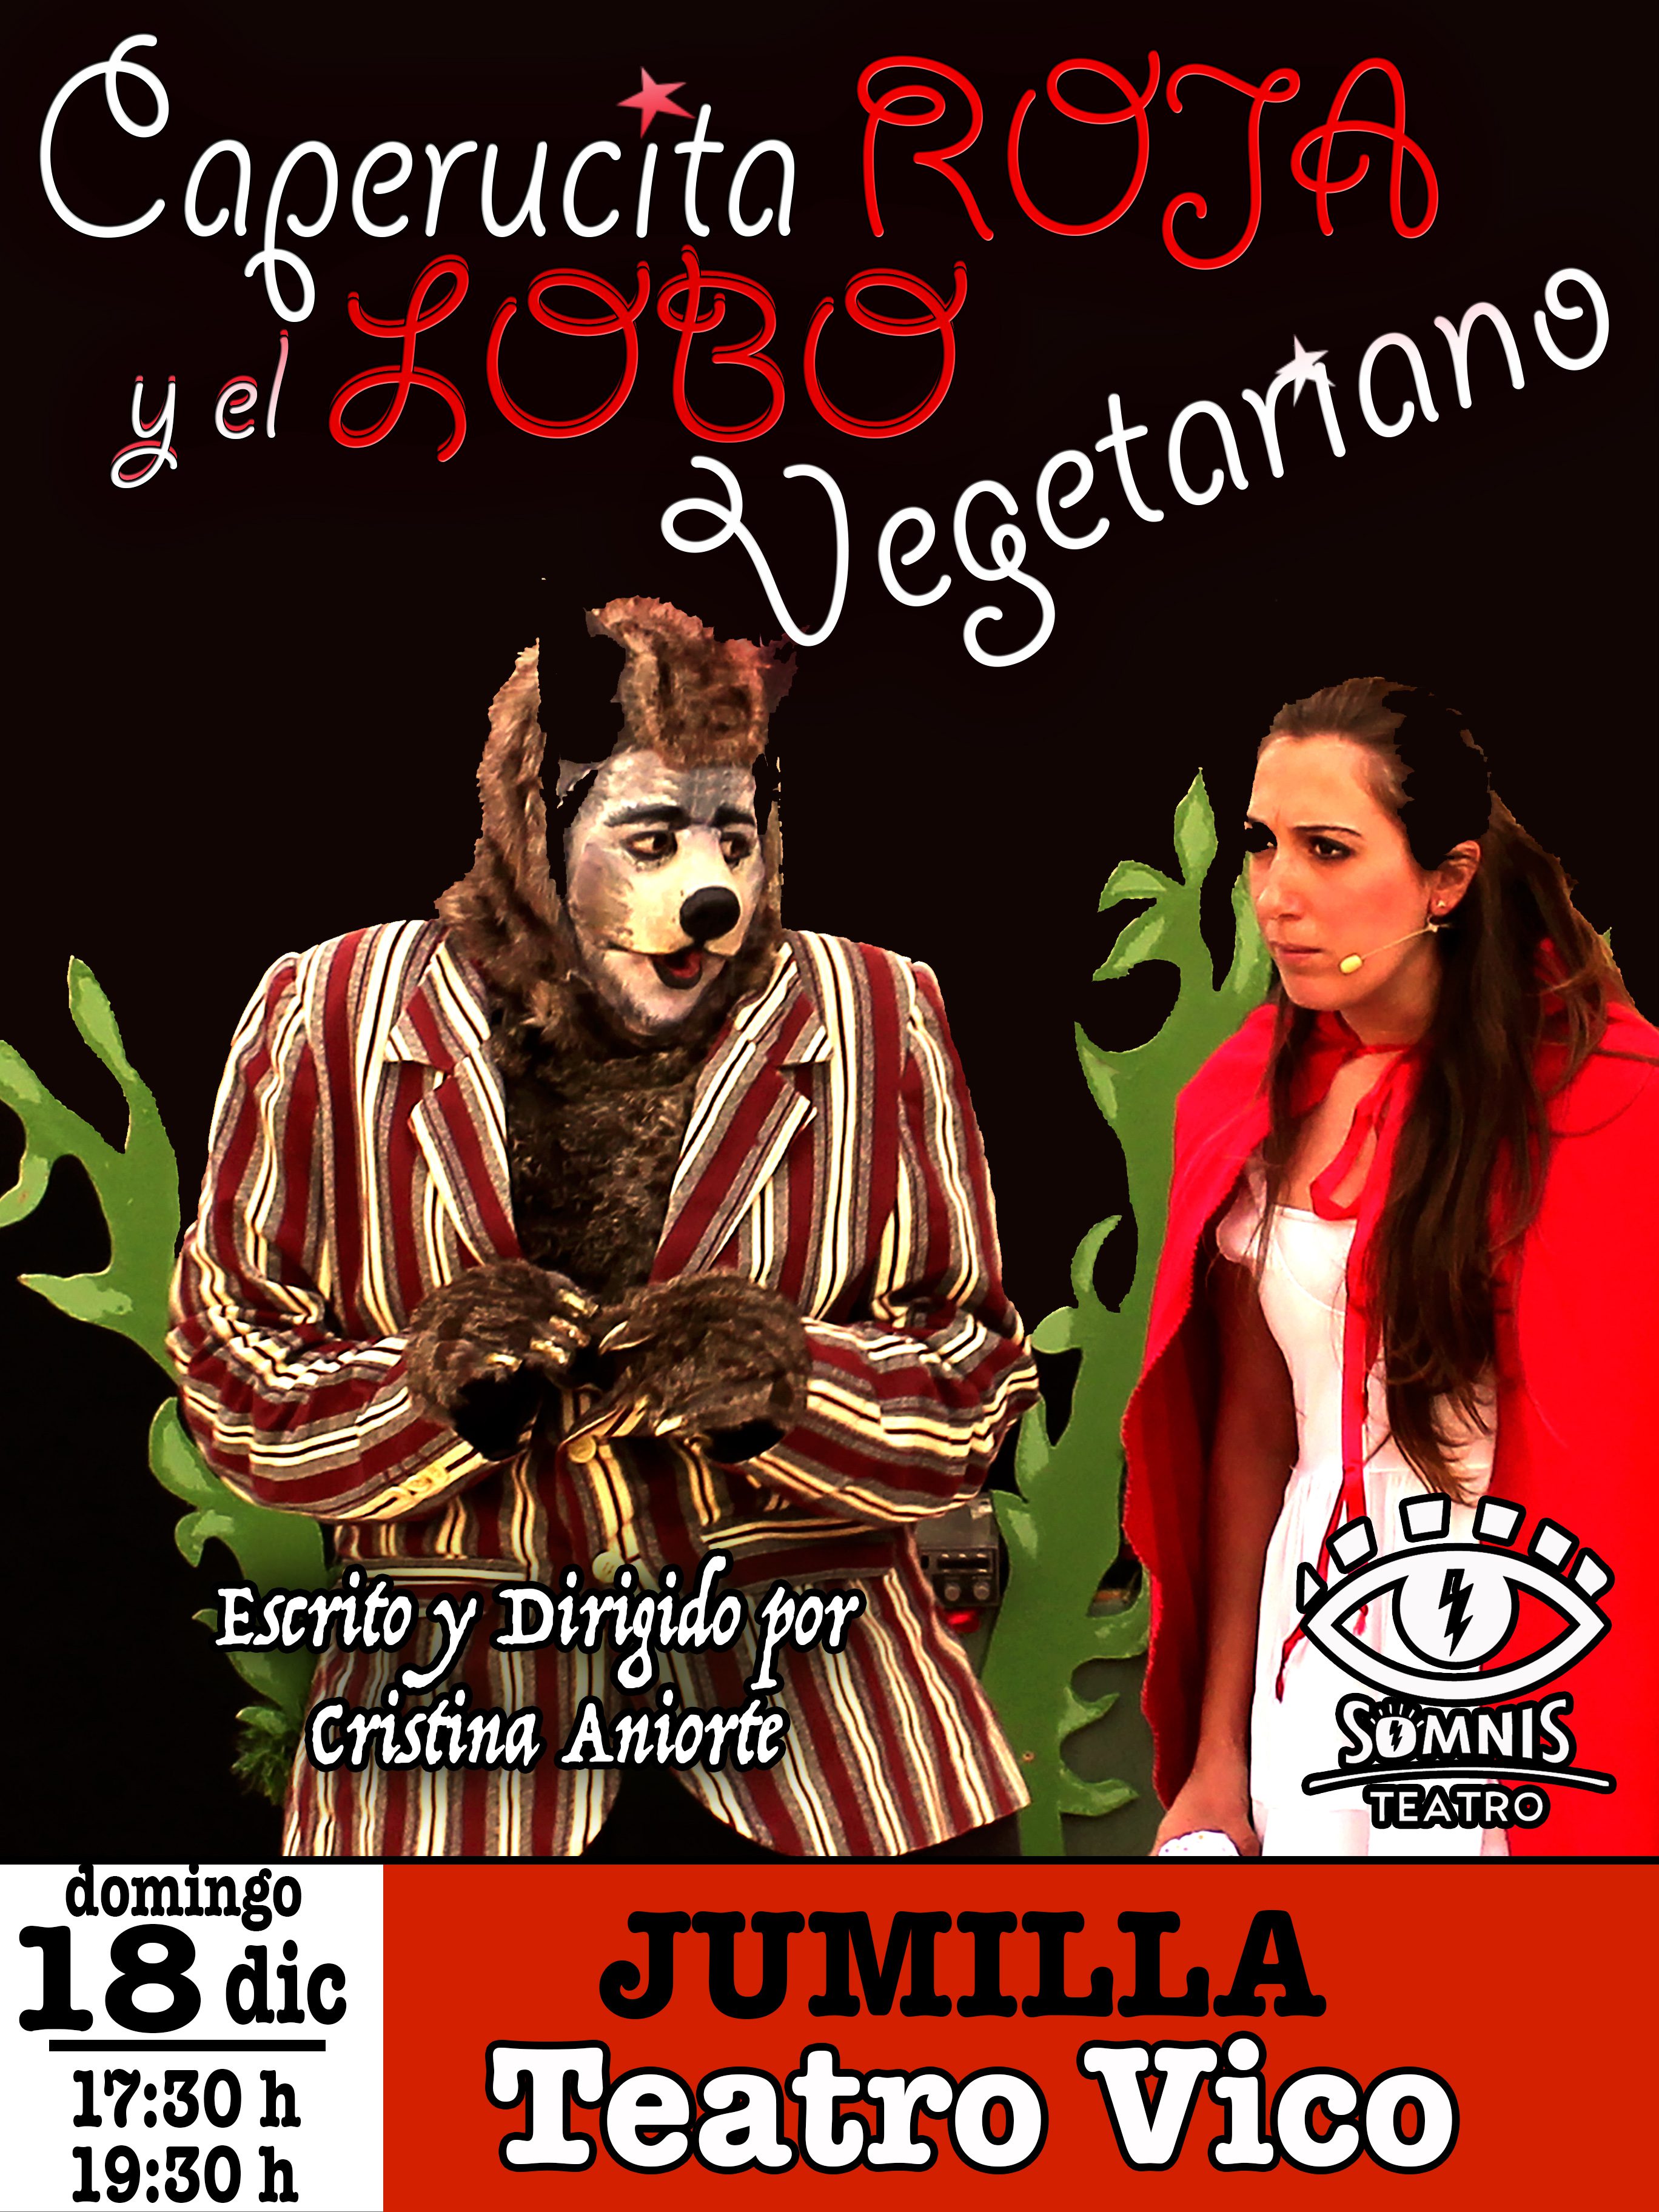 Caperucita y el Lobo Vegetariano vienen este domingo al Teatro Vico